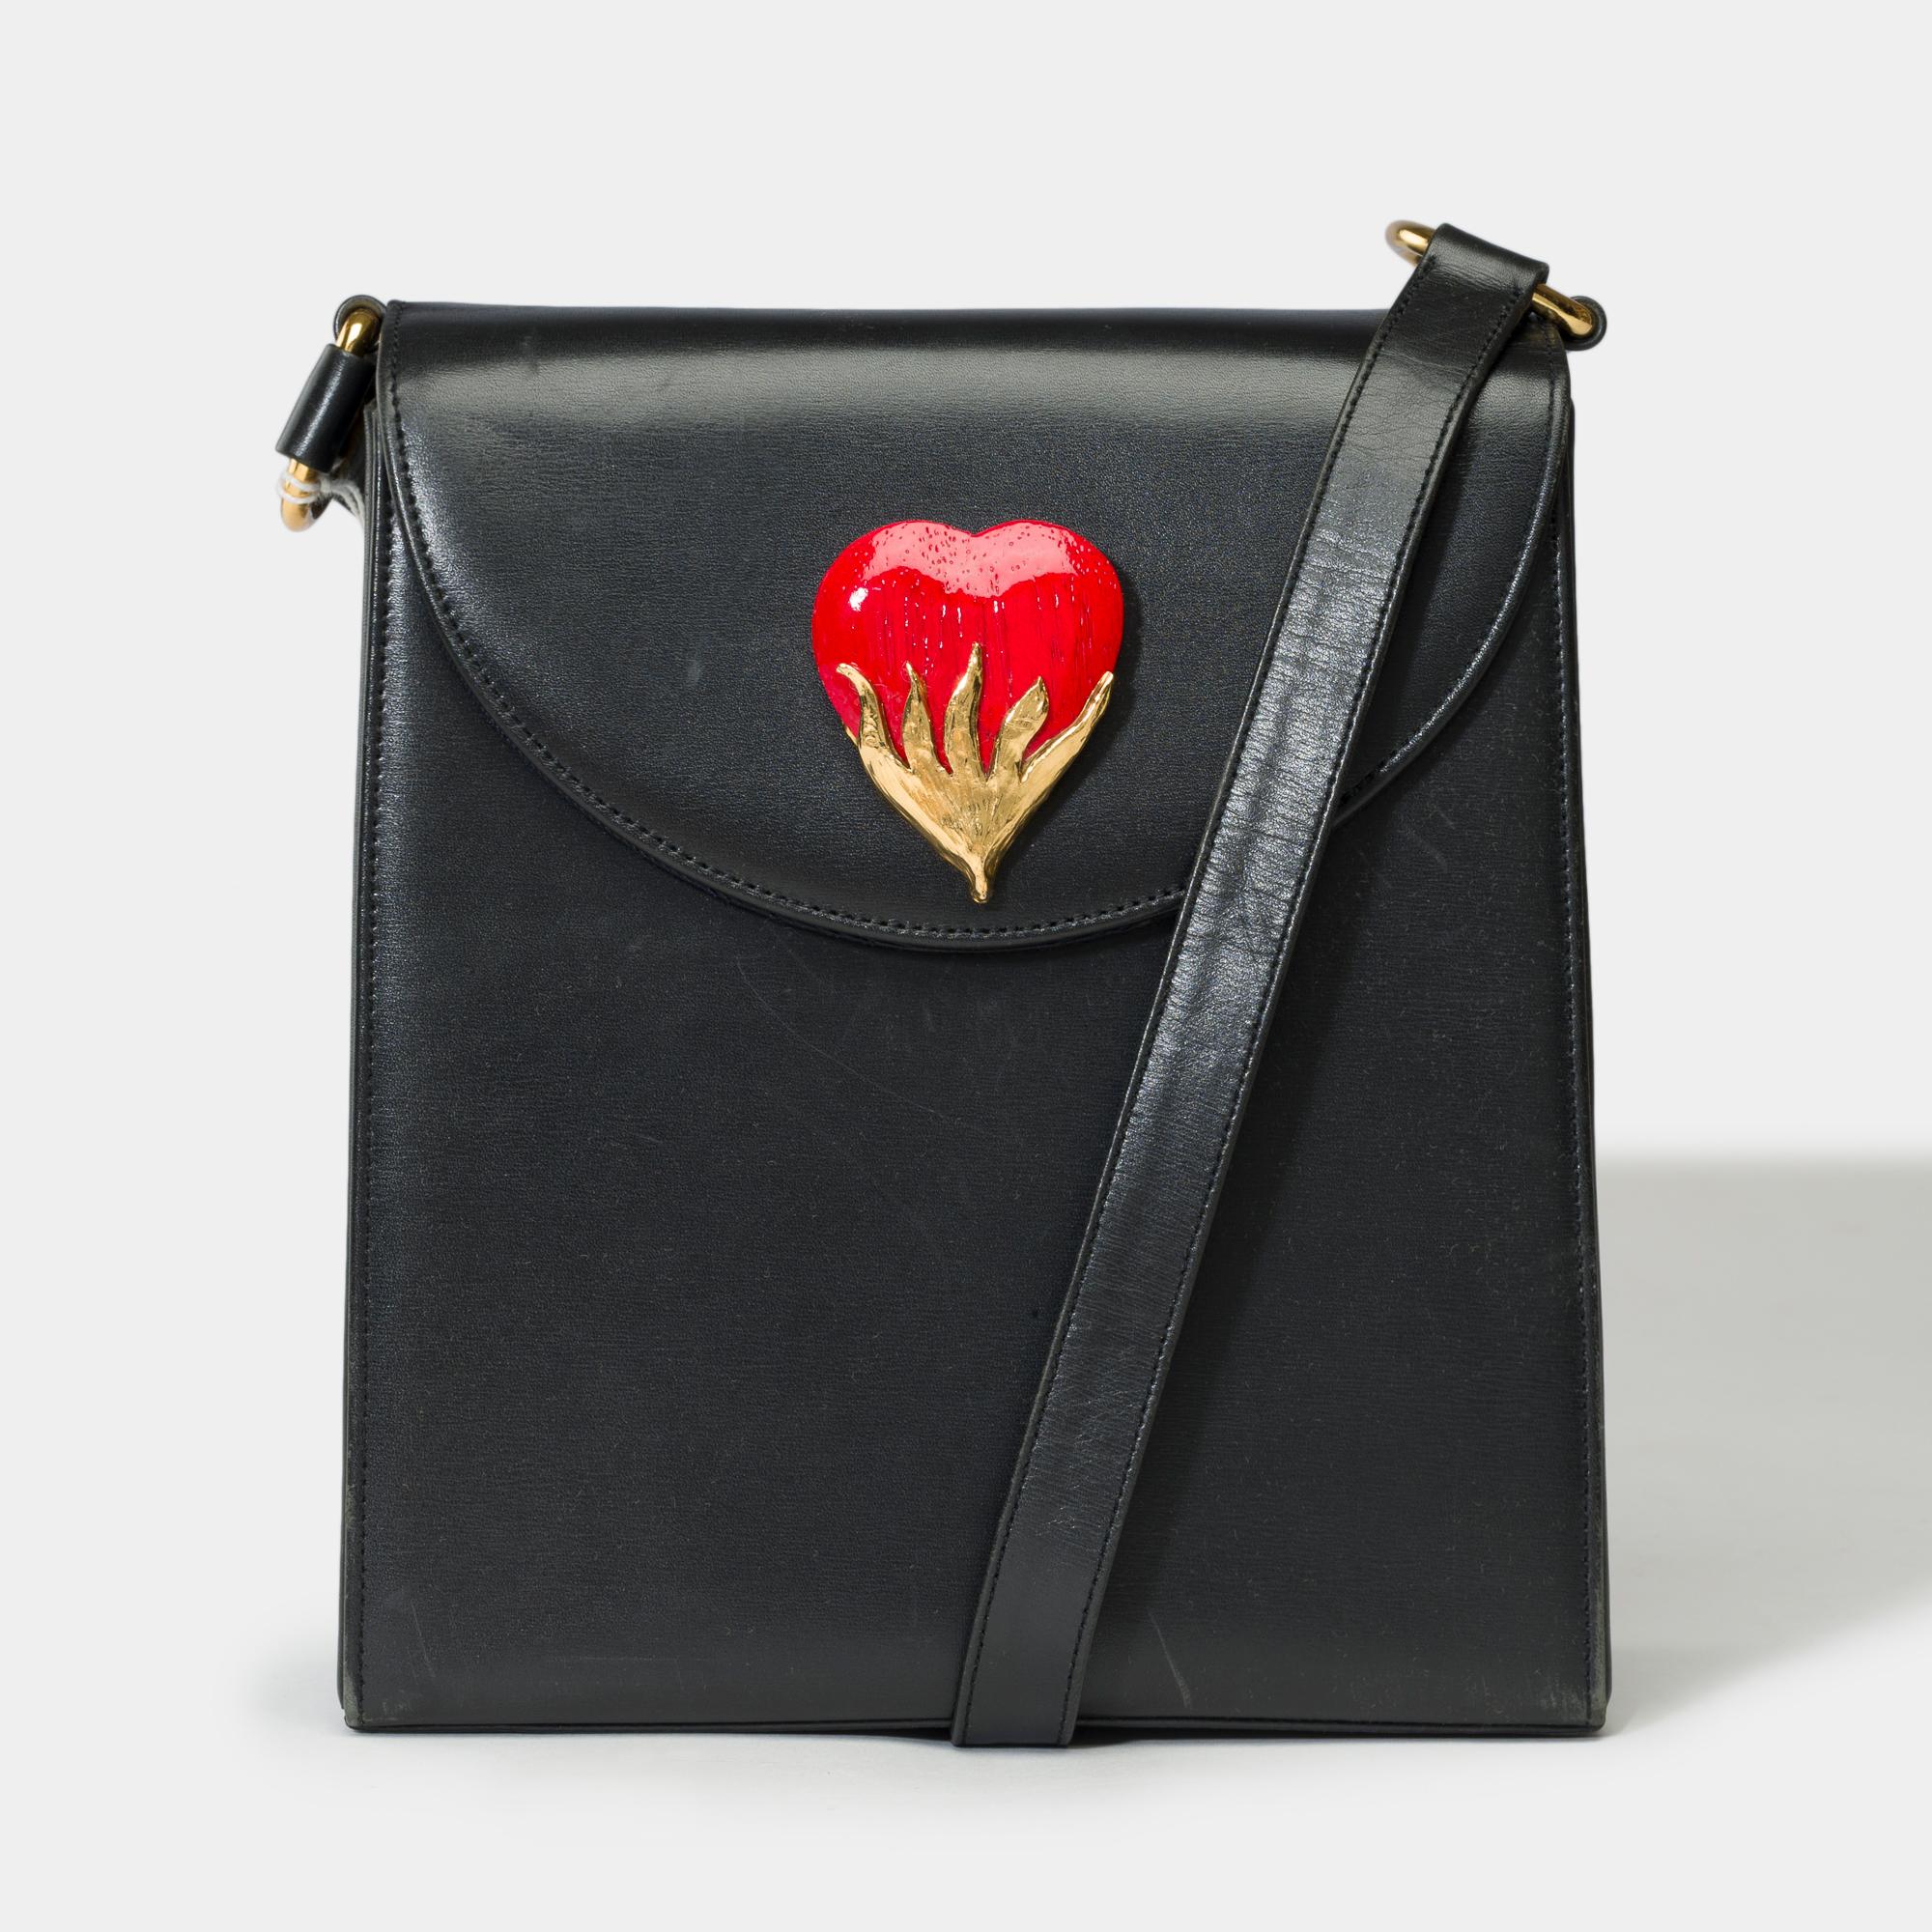 Hübsche Yves Saint-Laurent Vintage Messenger Bag aus schwarzem Kalbsleder, goldene Metallverzierung, schwarzer Ledergriff für Schulter oder Crossbody

Klappenverschluss mit Druckknopf
1 aufgesetzte Tasche
1 Tasche mit Reißverschluss
Unterschrift: